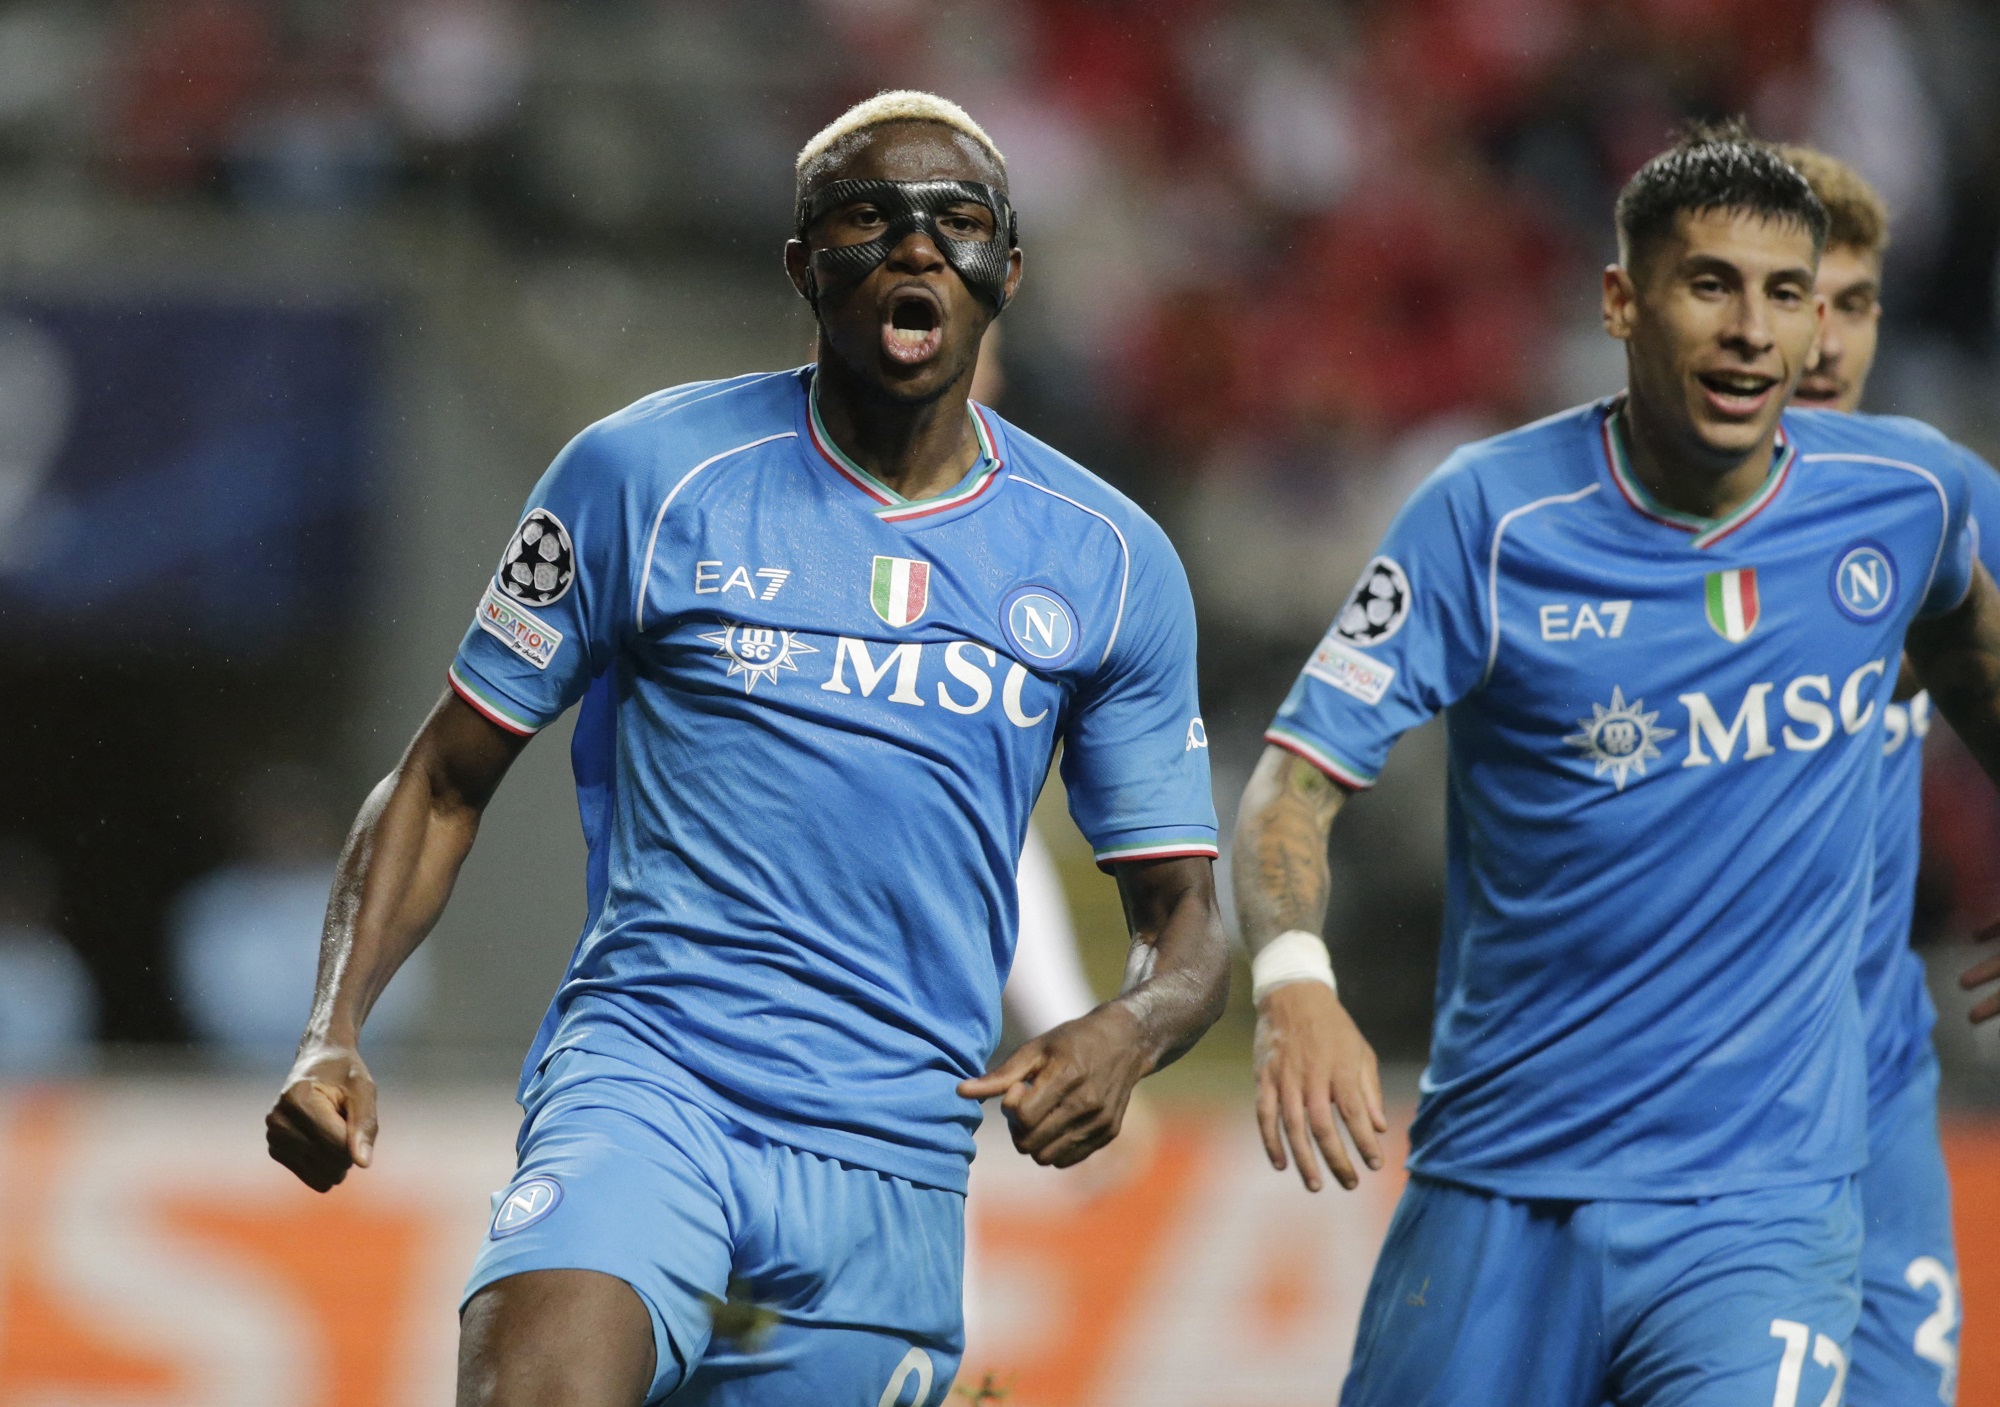 Braga 1-2 Napoli: Di Lorenzo and an own goal secure win - SSC Napoli